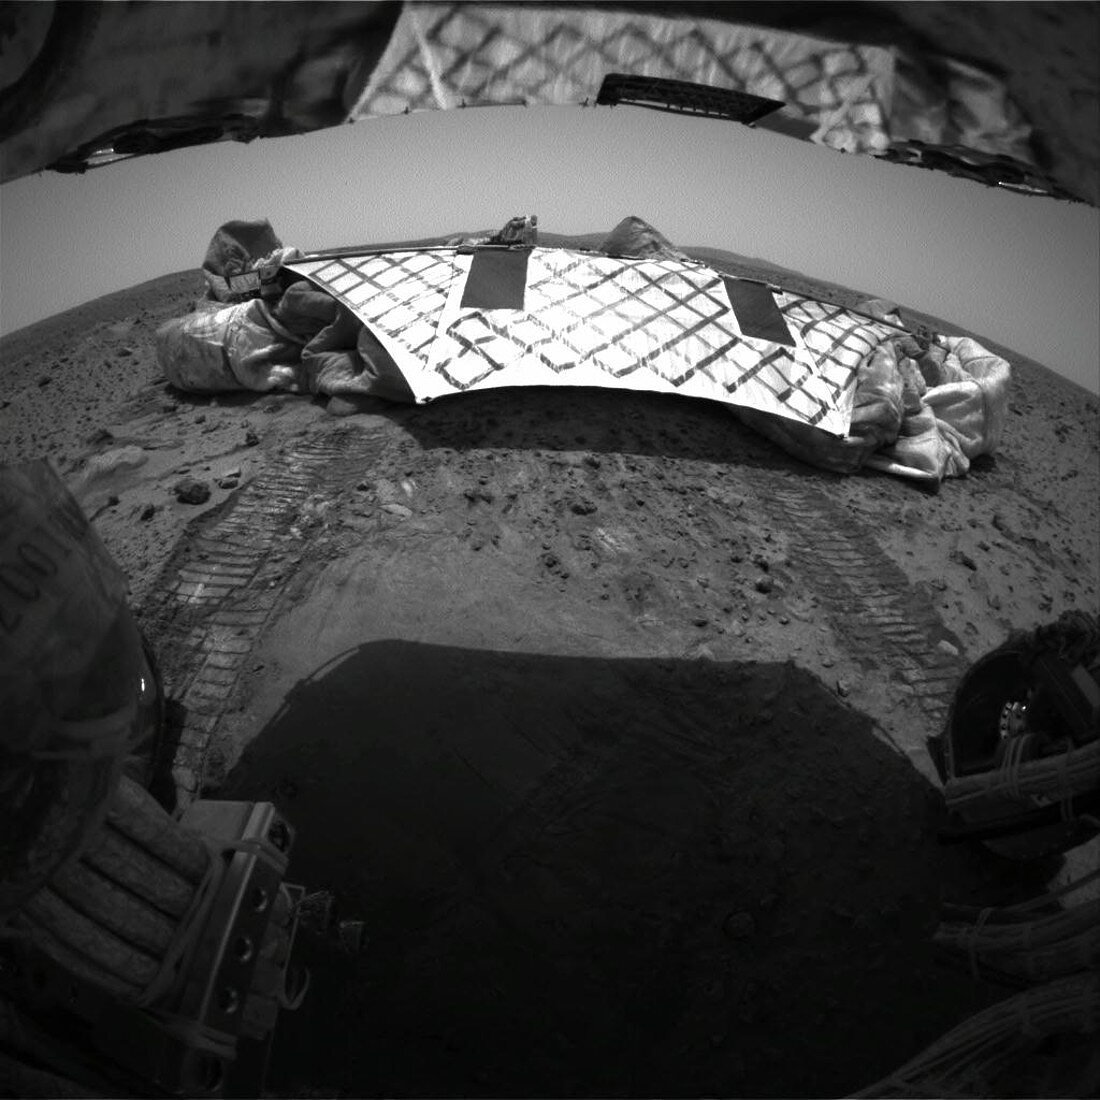 Spirit's lander on Mars